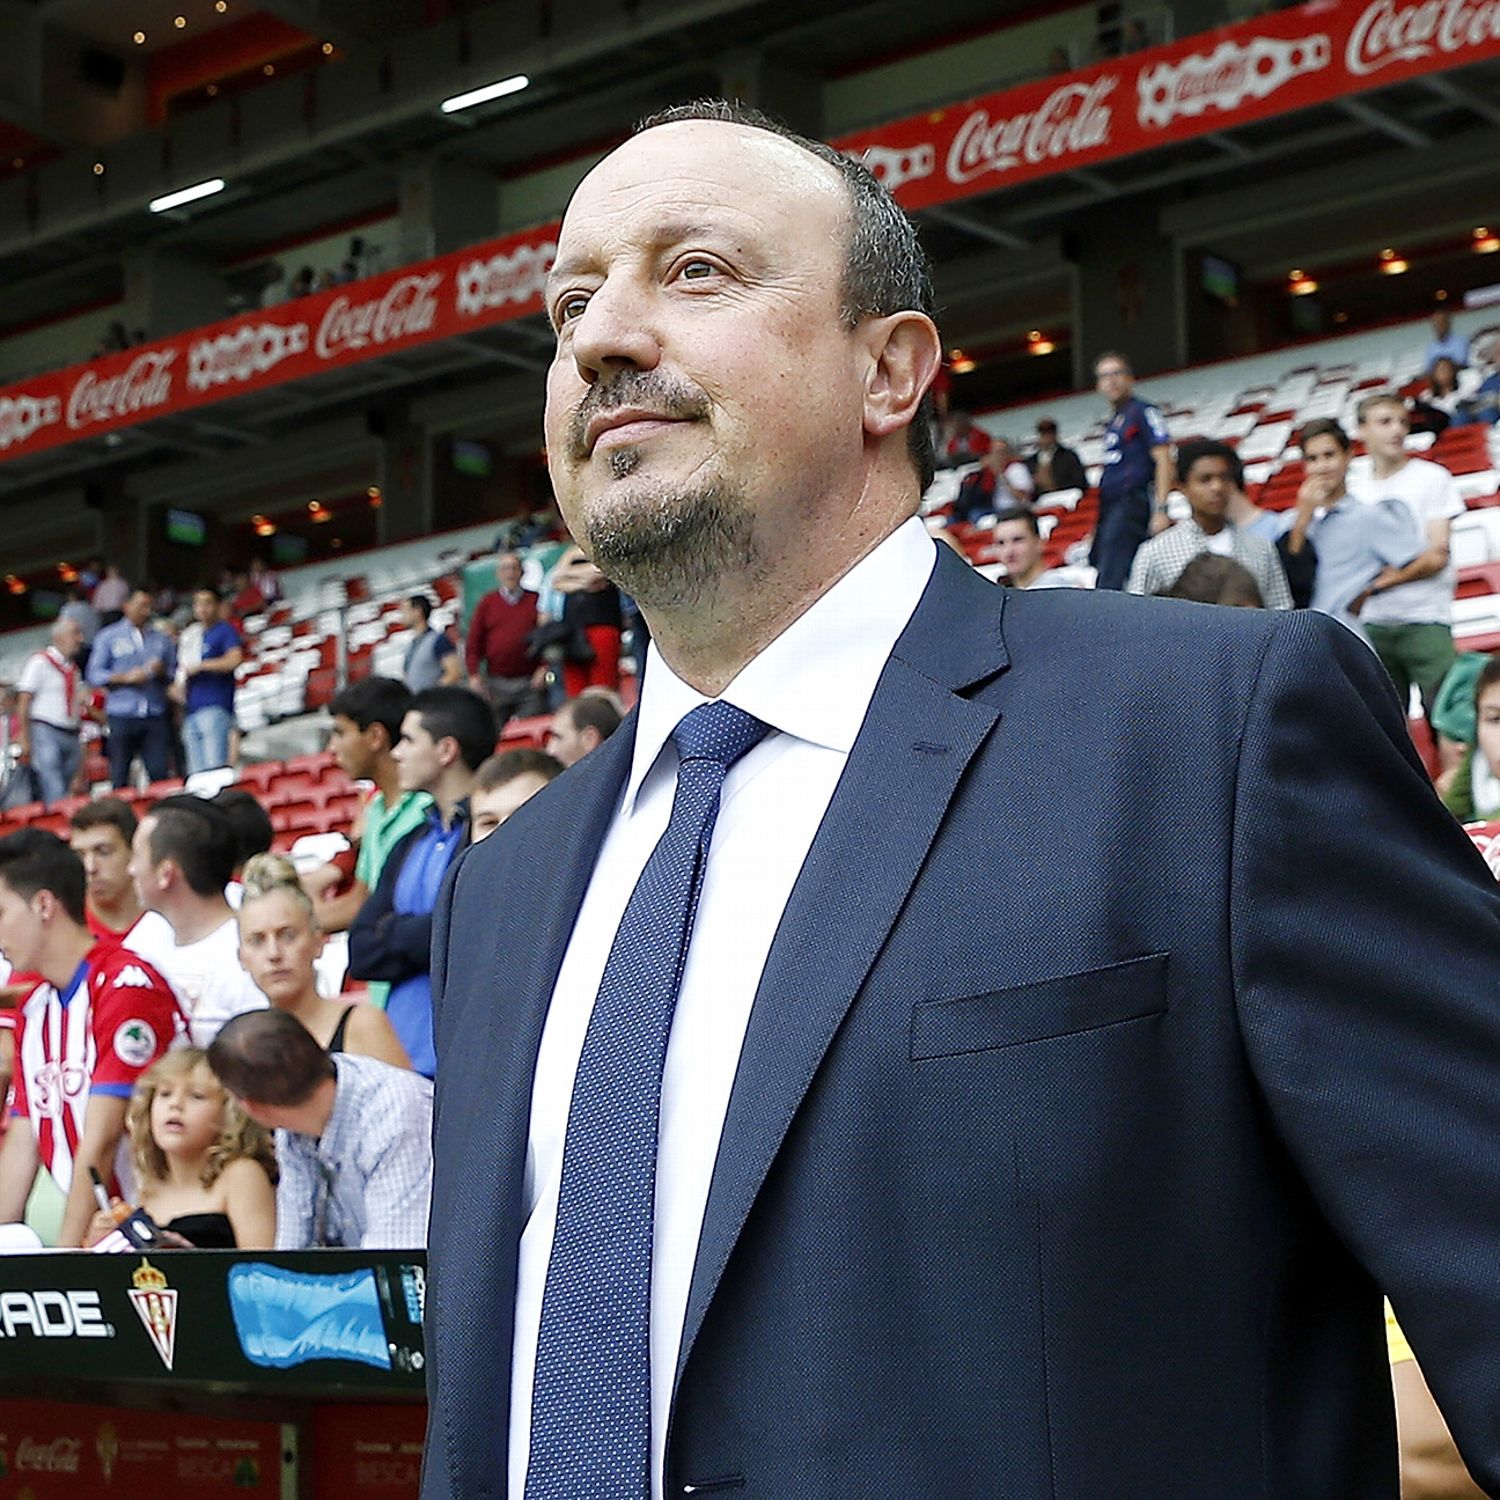 Real Madrid suffer due to confusing Rafa Benitez tactics - ESPN FC